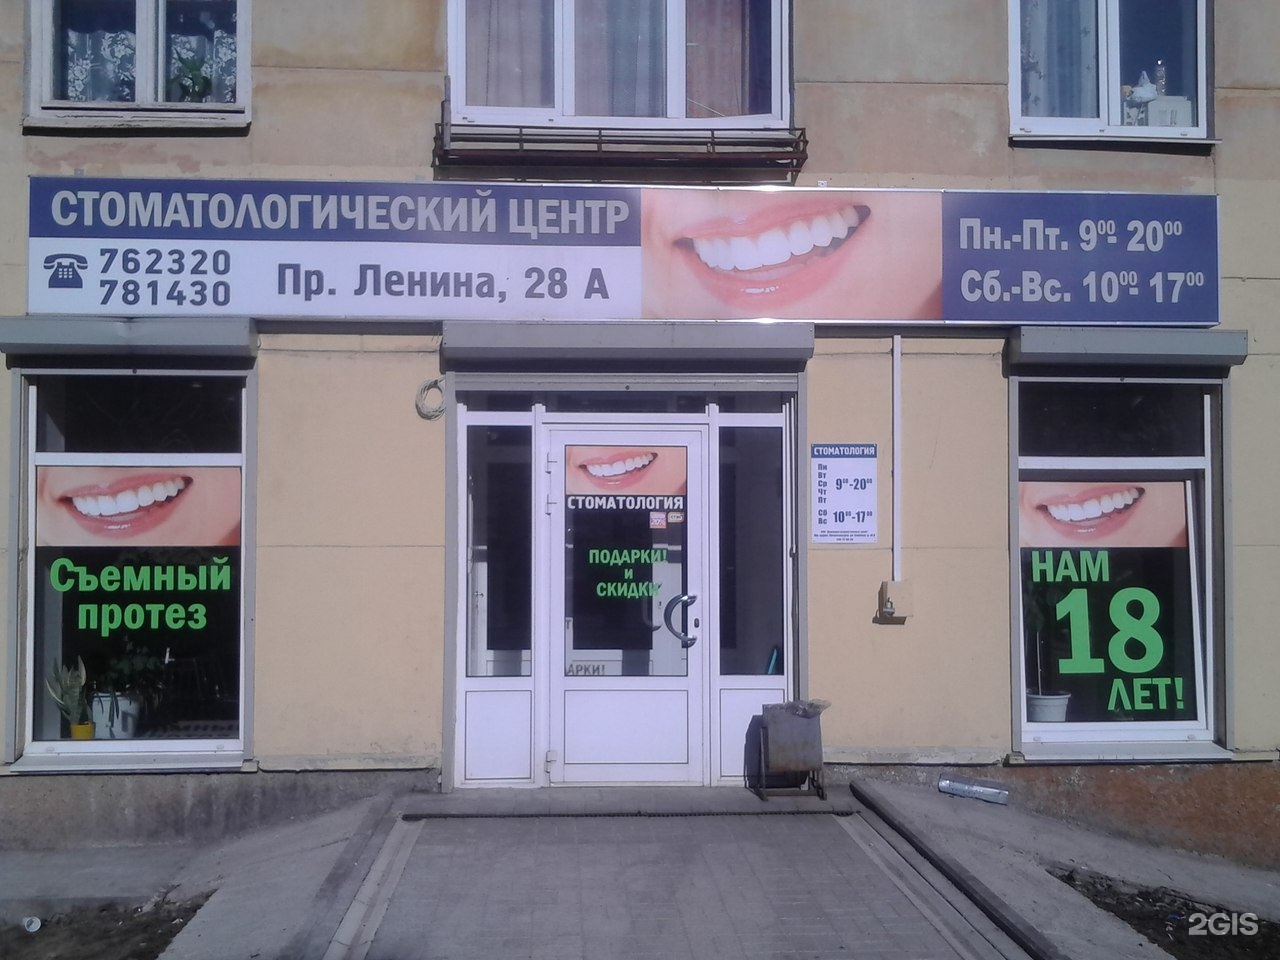 Петрозаводск центр стоматологии Ленина 28а